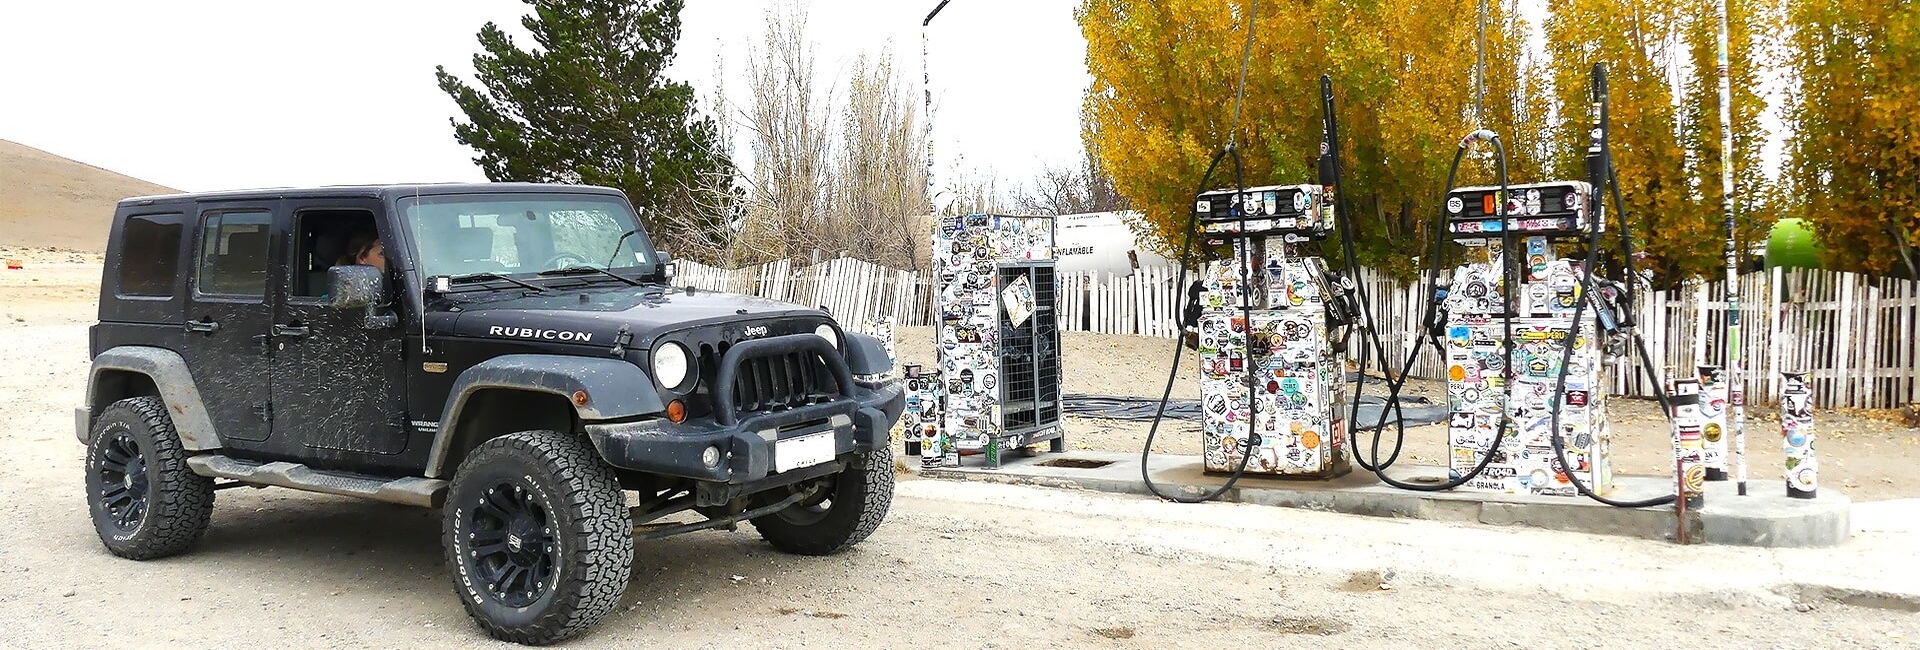 Jeep Safari Ruta 40, Patagonia Argentina